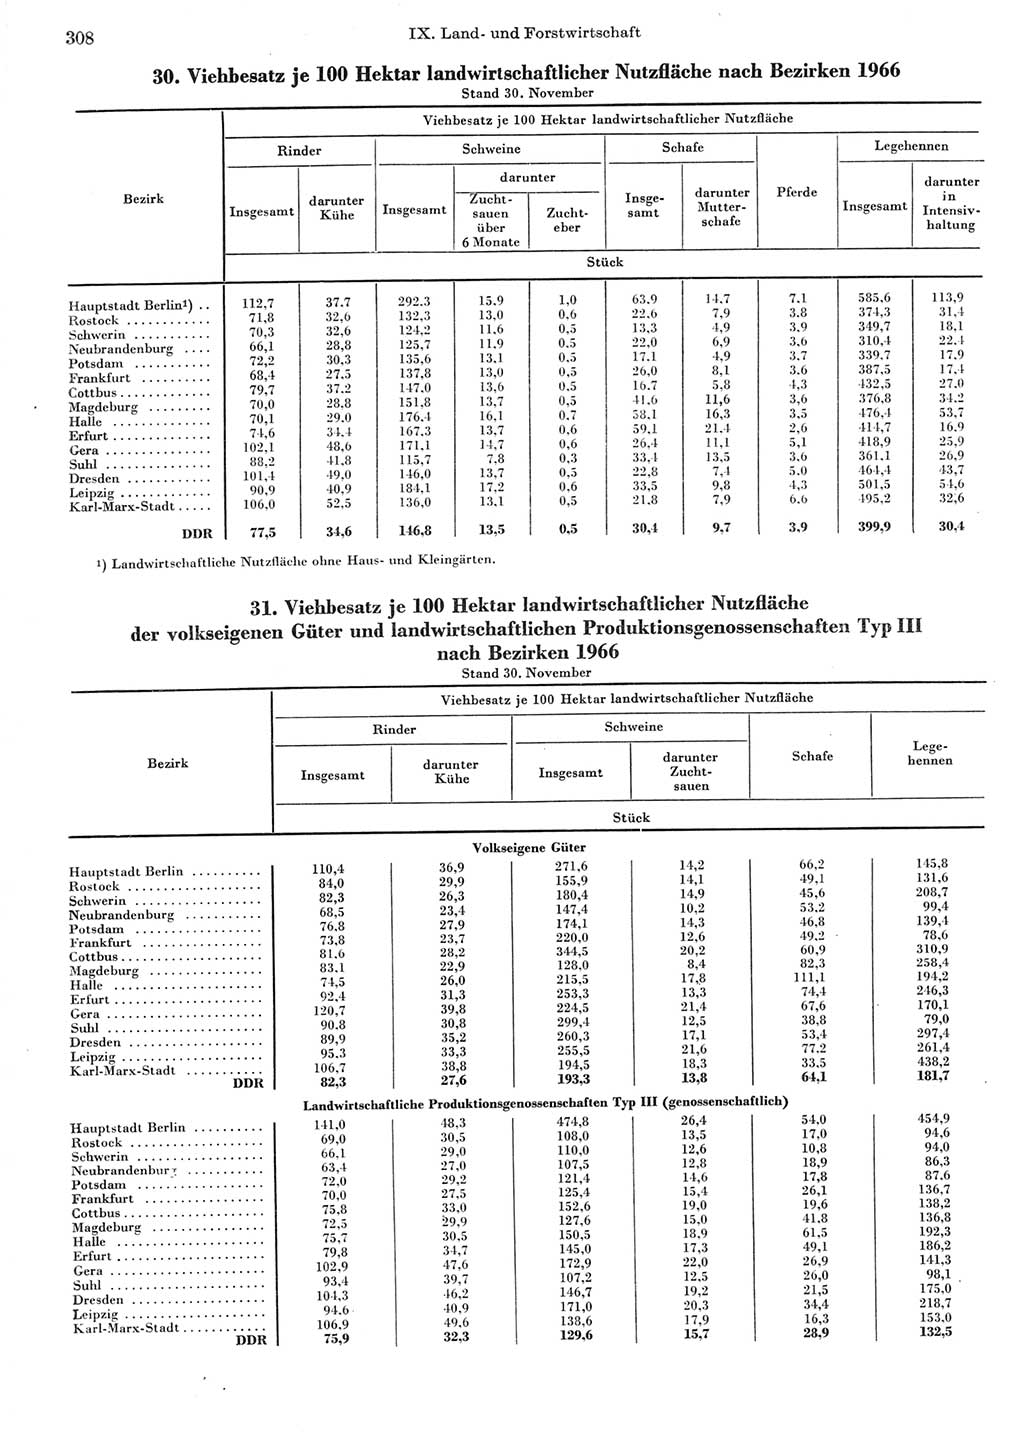 Statistisches Jahrbuch der Deutschen Demokratischen Republik (DDR) 1967, Seite 308 (Stat. Jb. DDR 1967, S. 308)